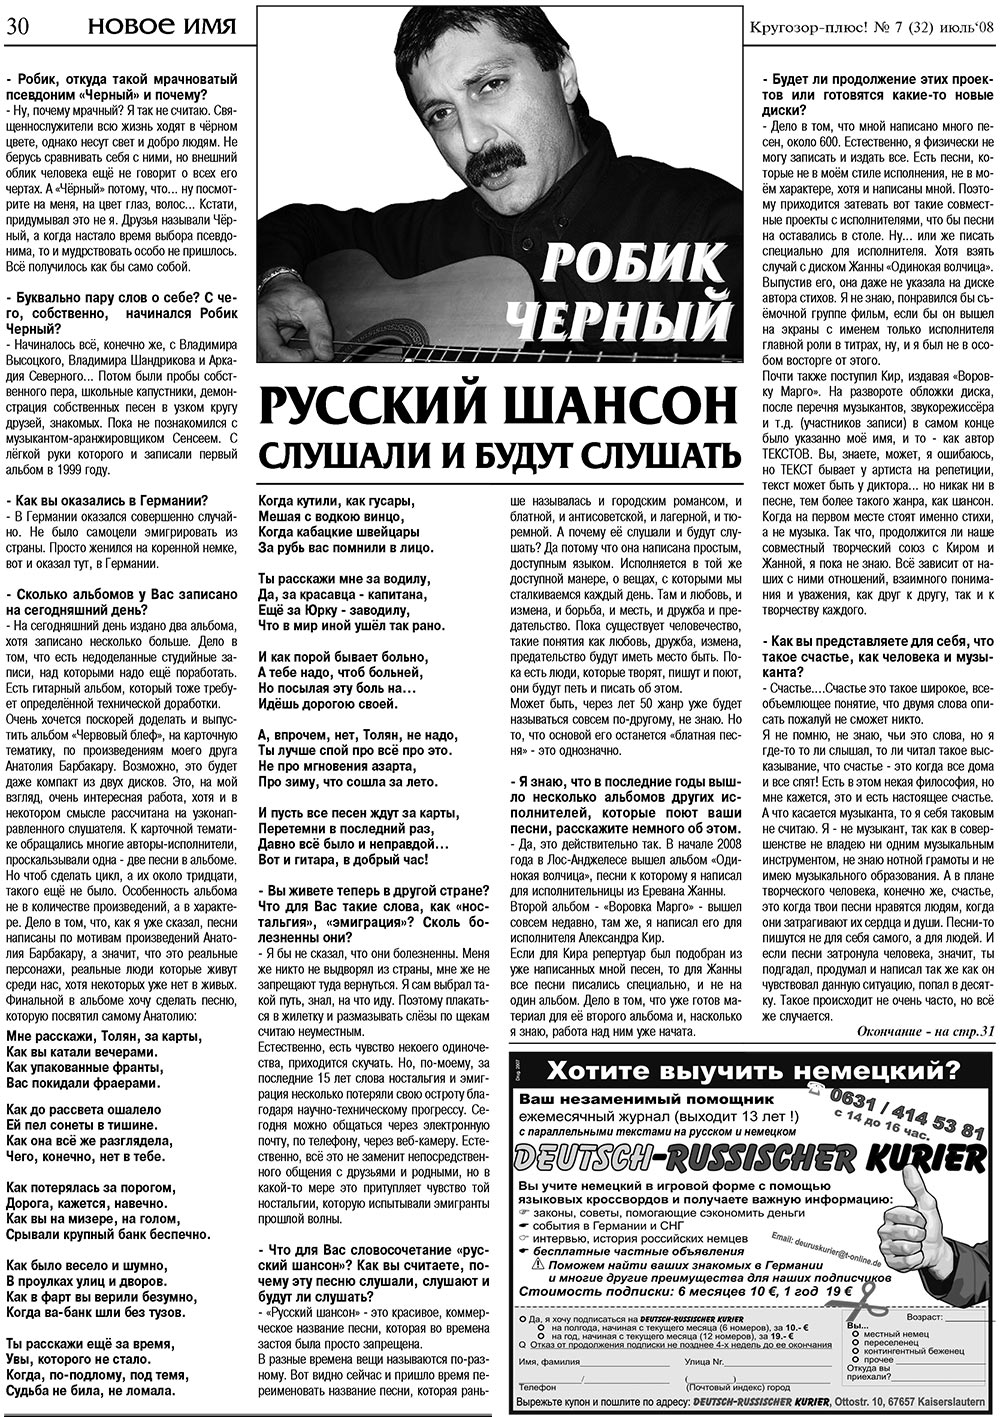 Кругозор плюс!, газета. 2008 №7 стр.30